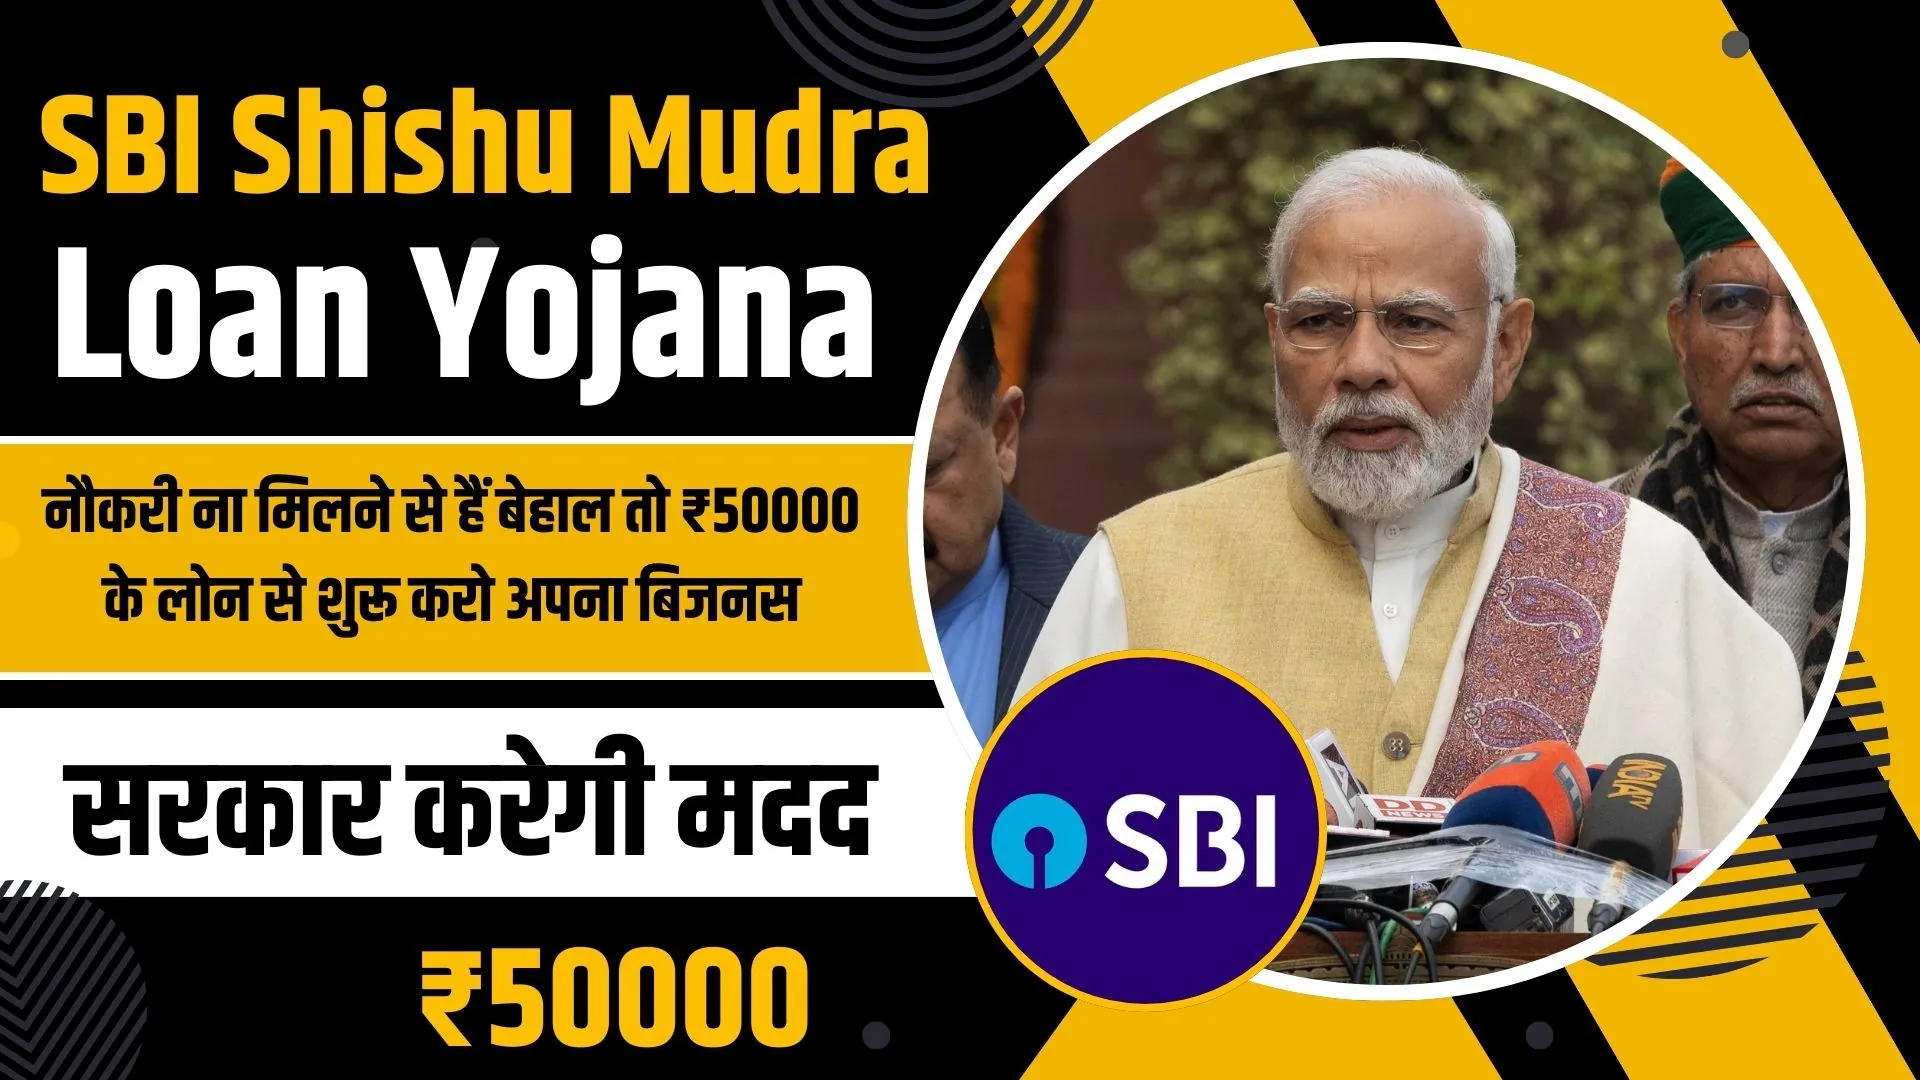 SBI Shishu Mudra Loan Yojana 2024: नौकरी ना मिलने से हैं बेहाल तो ₹50000 के लोन से शुरू करो अपना बिजनस, सरकार करेगी मदद